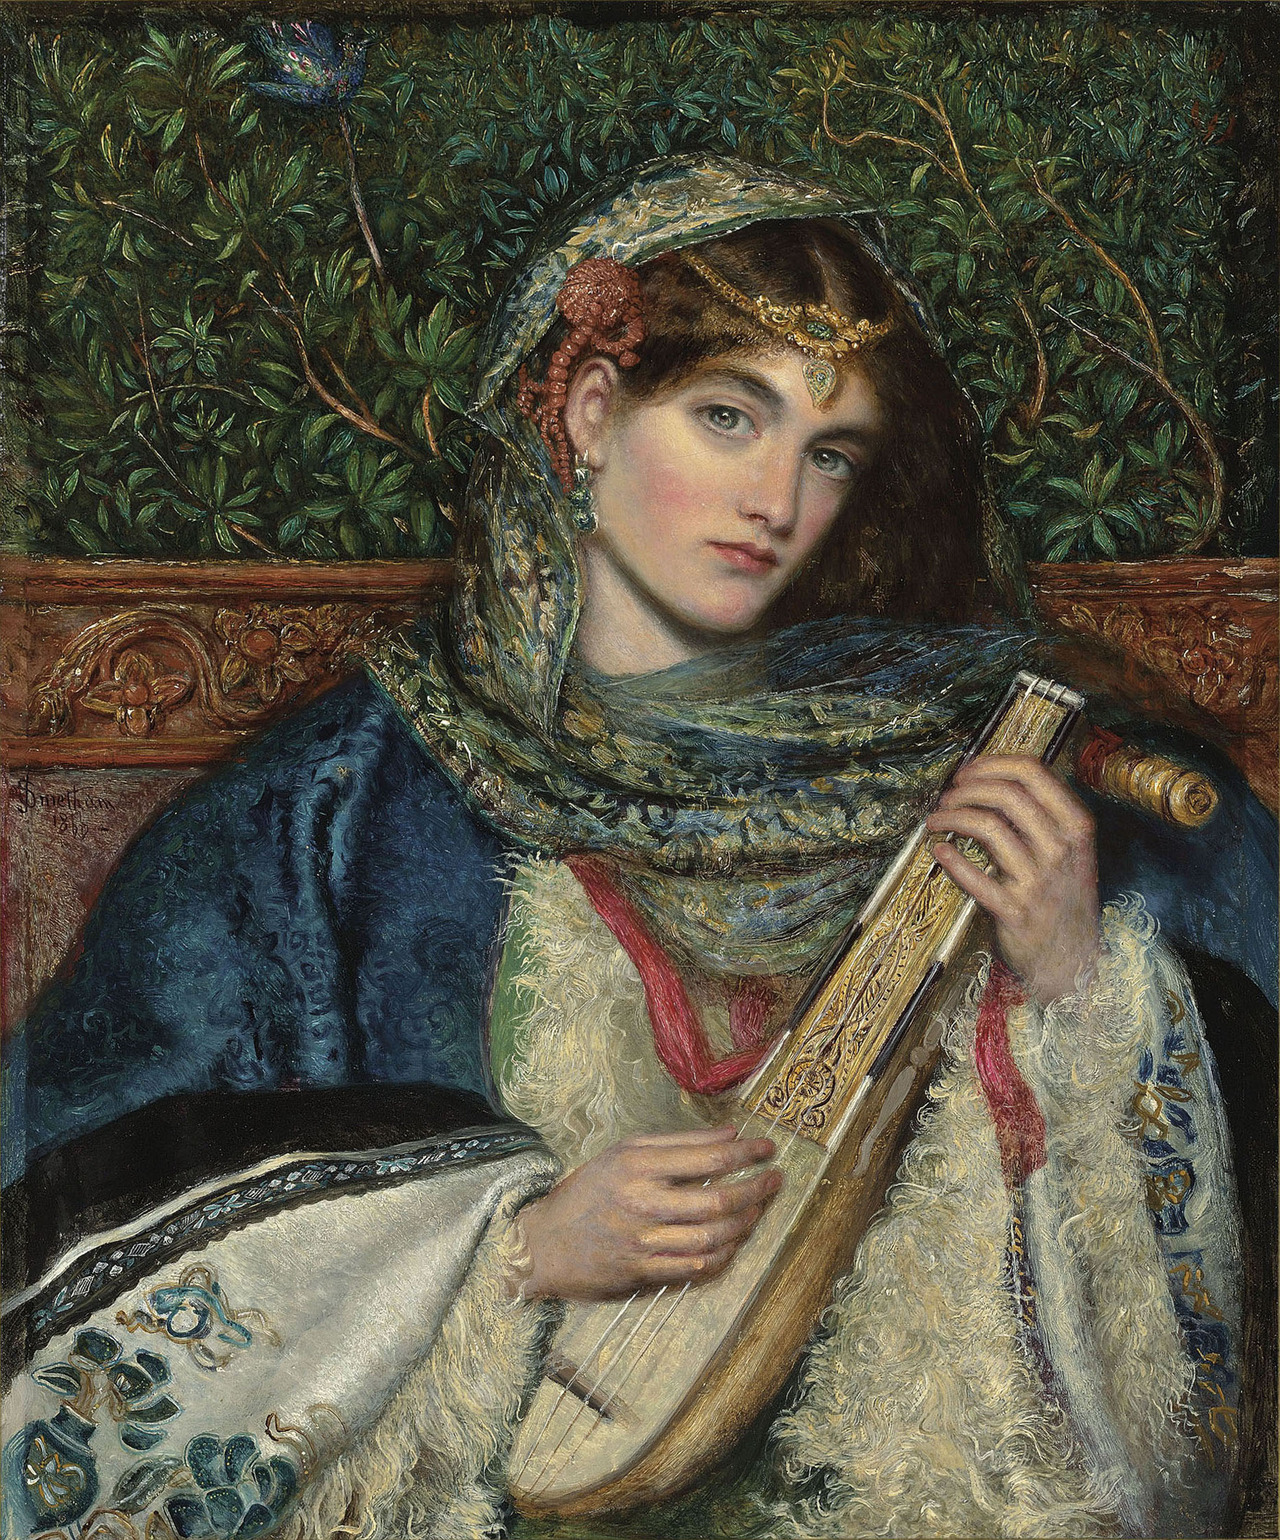 oncanvas:
â€œ The Mandolin, James Smetham, 1866
oil on canvas
â€